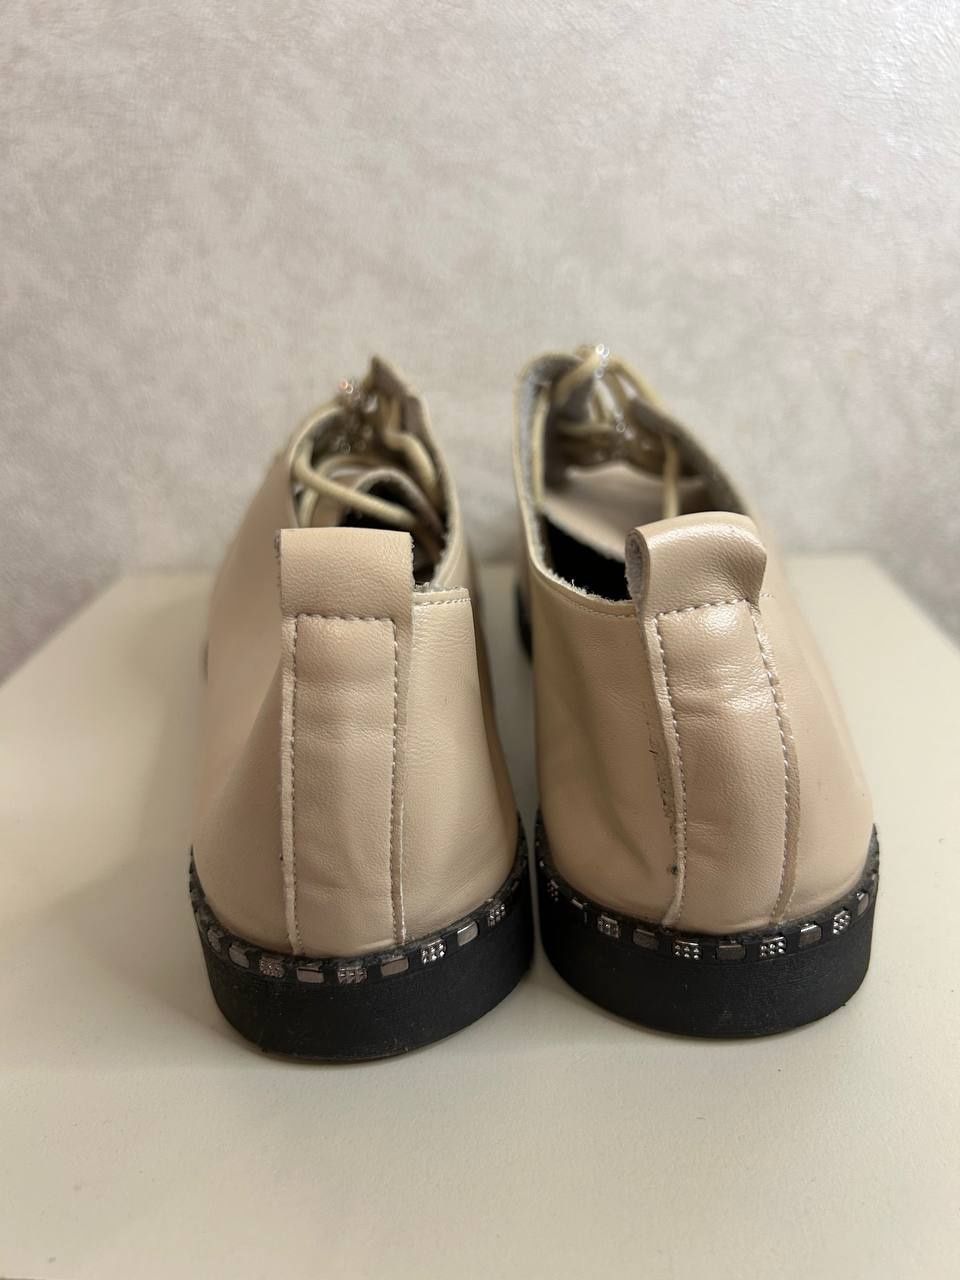 Женские мокасины туфли кеды кроссовки бежевые недорого размер  36 39